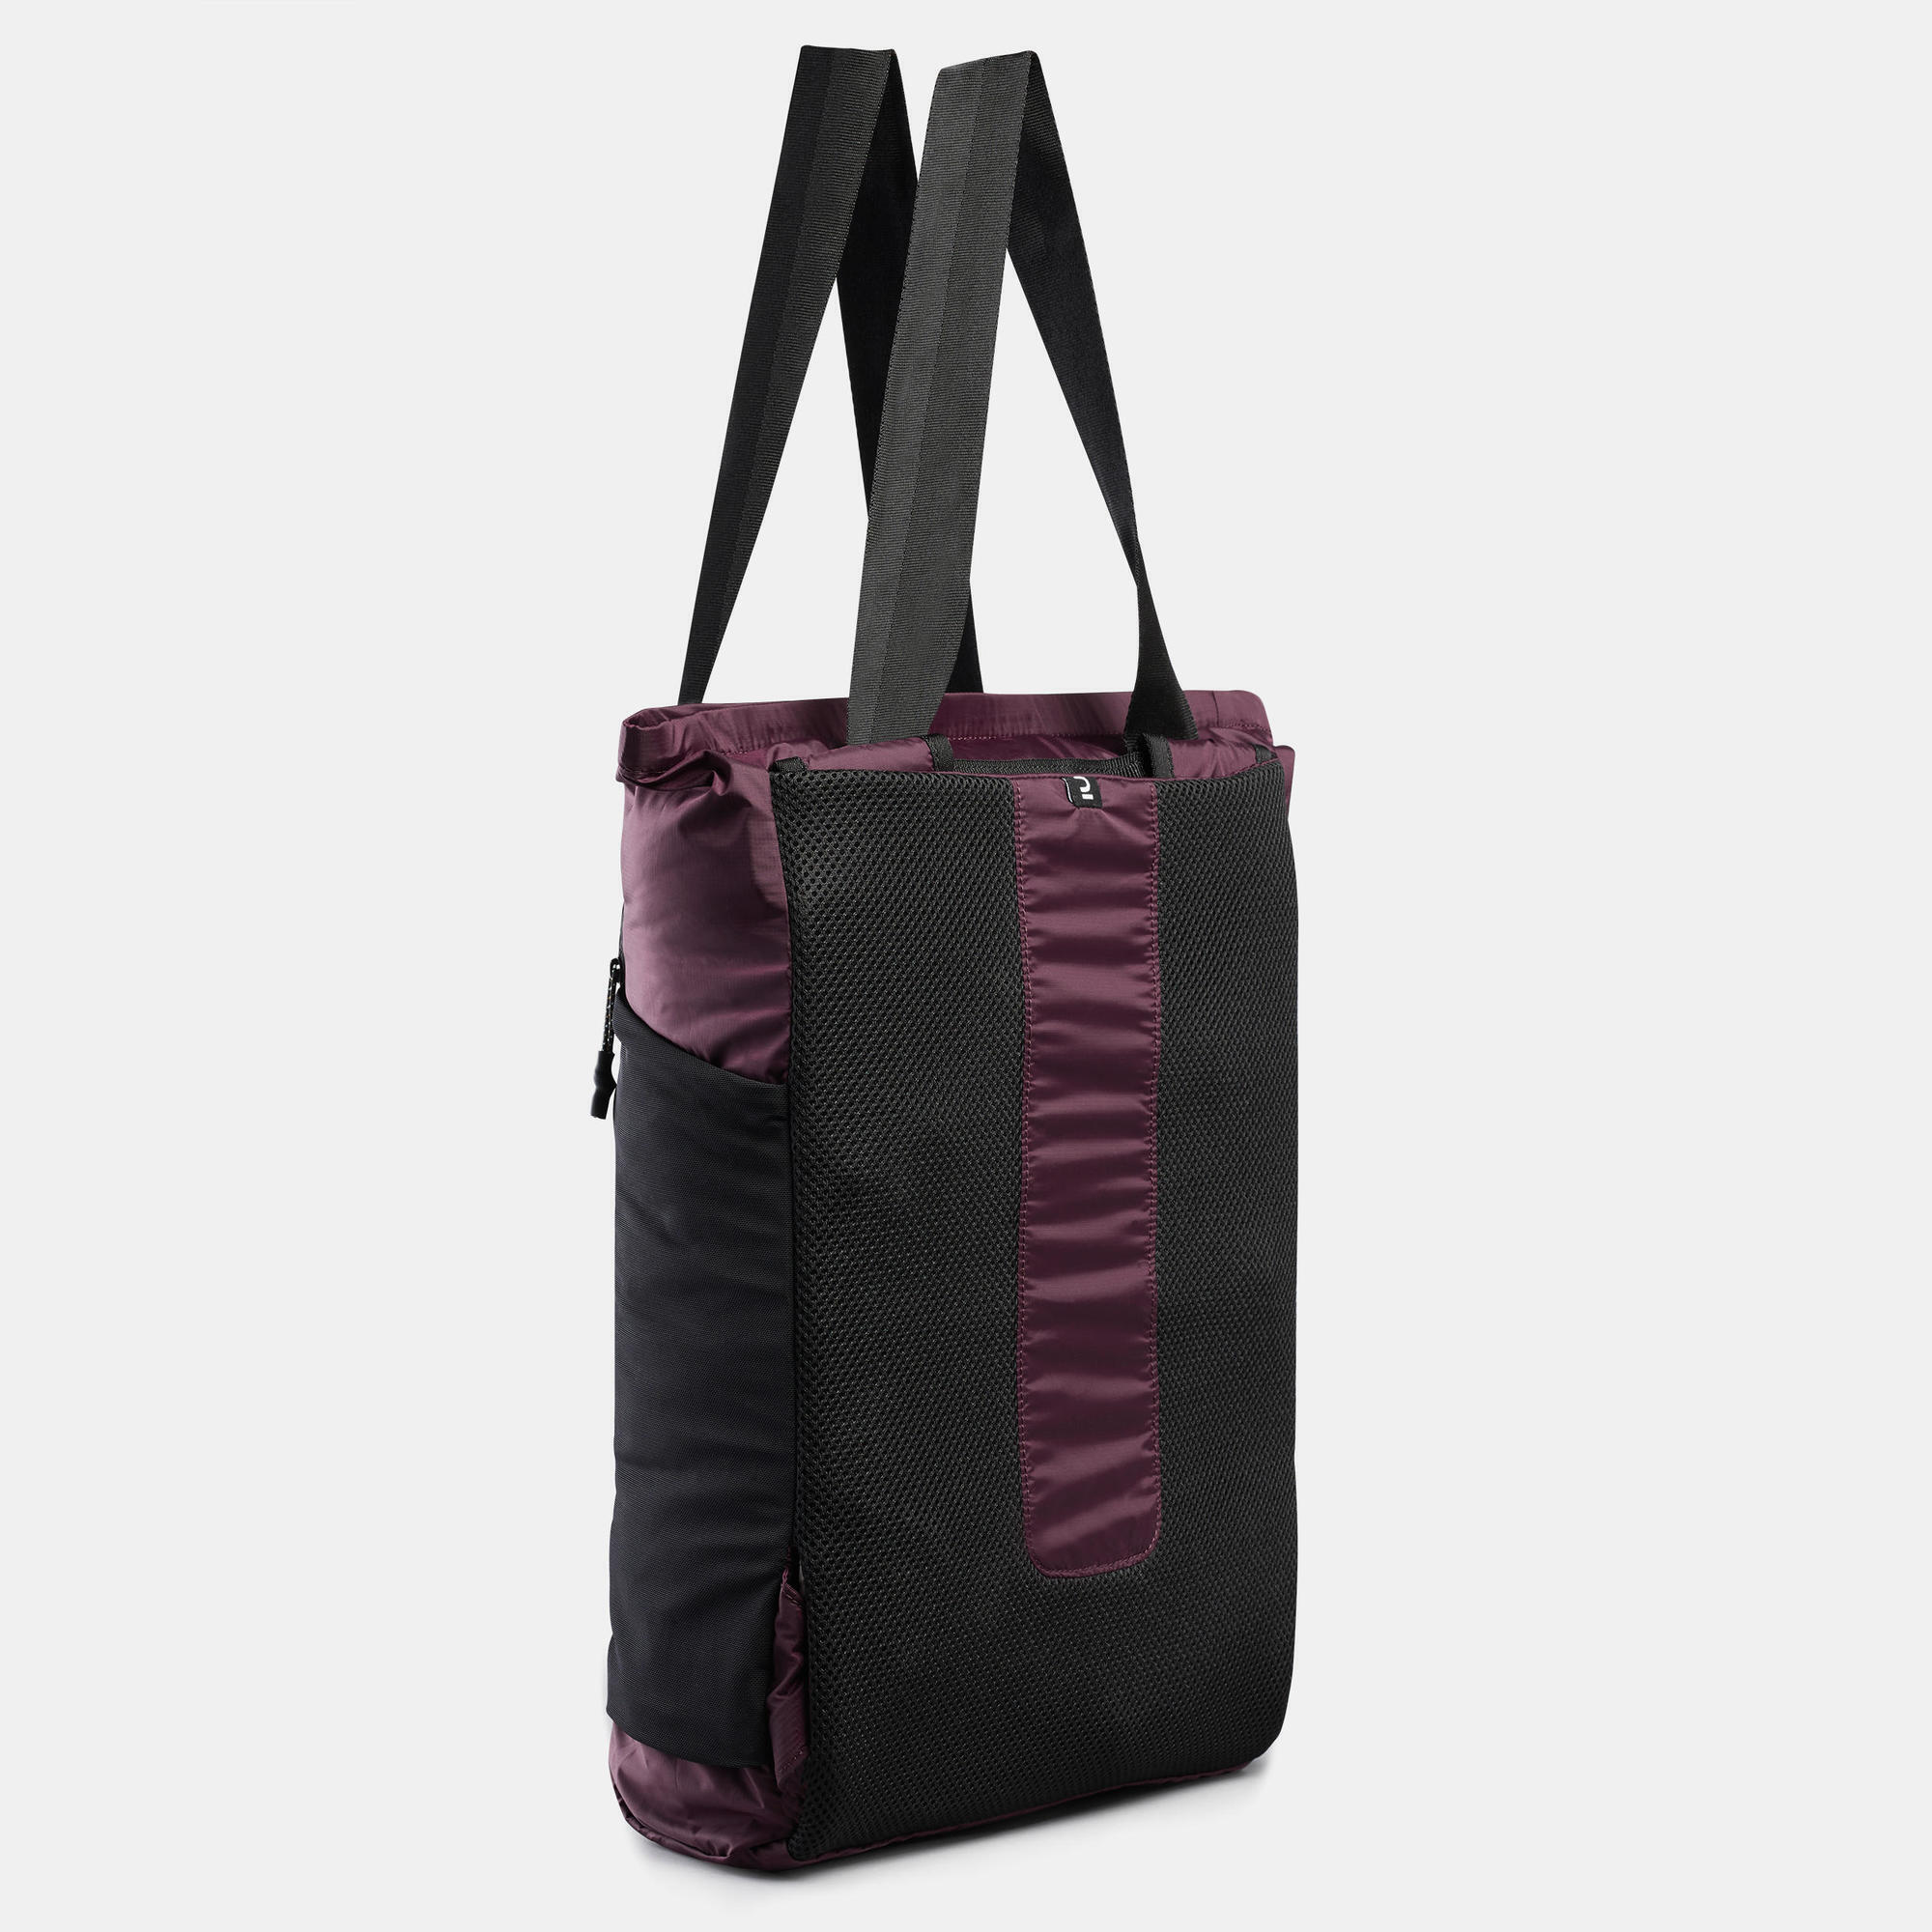 2in1 tote bag 15L - Travel 6/11